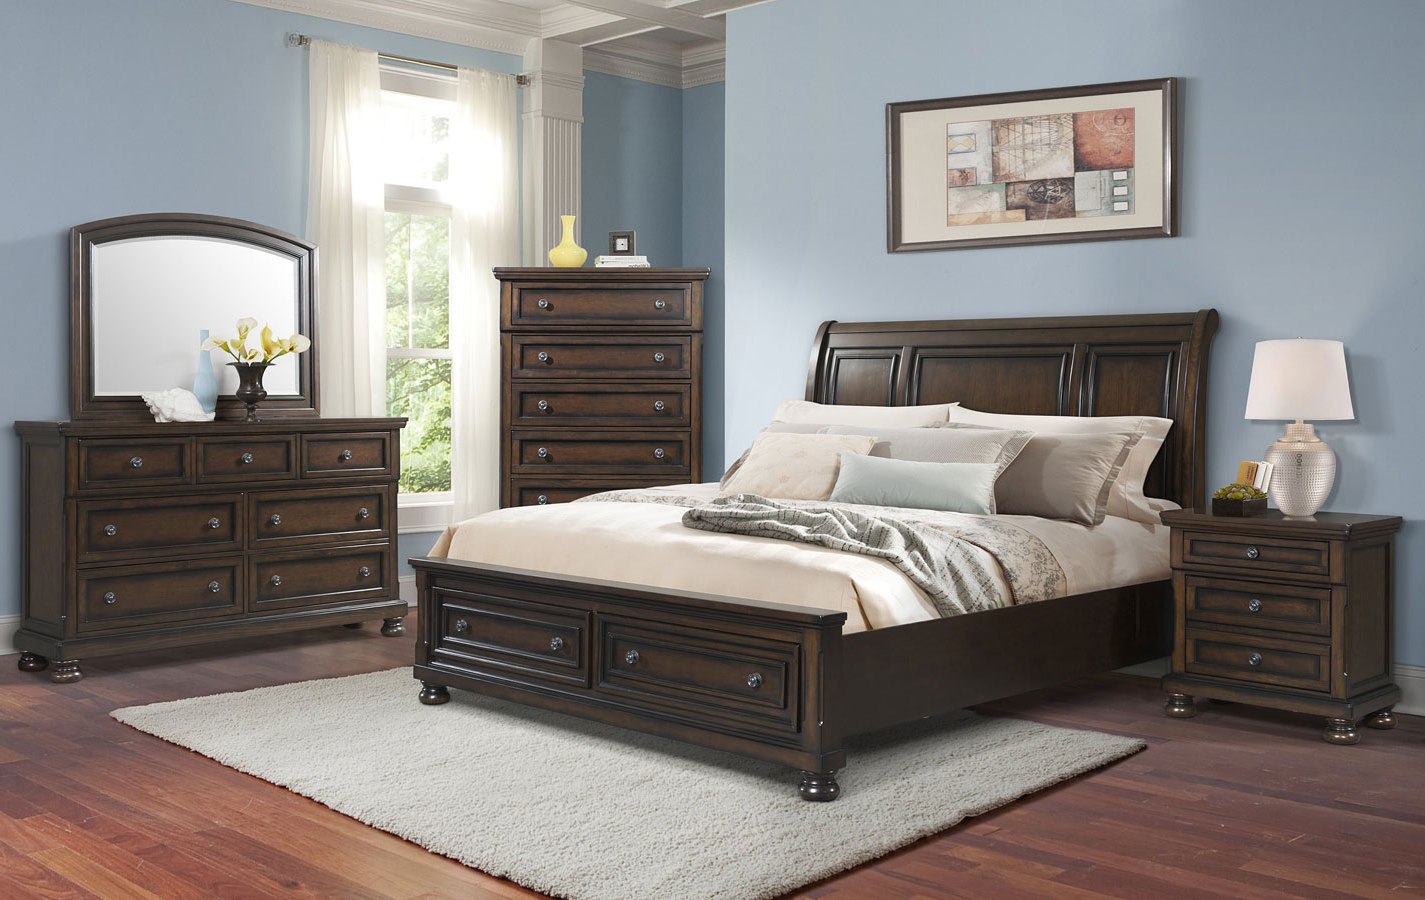 dfs bedroom furniture set